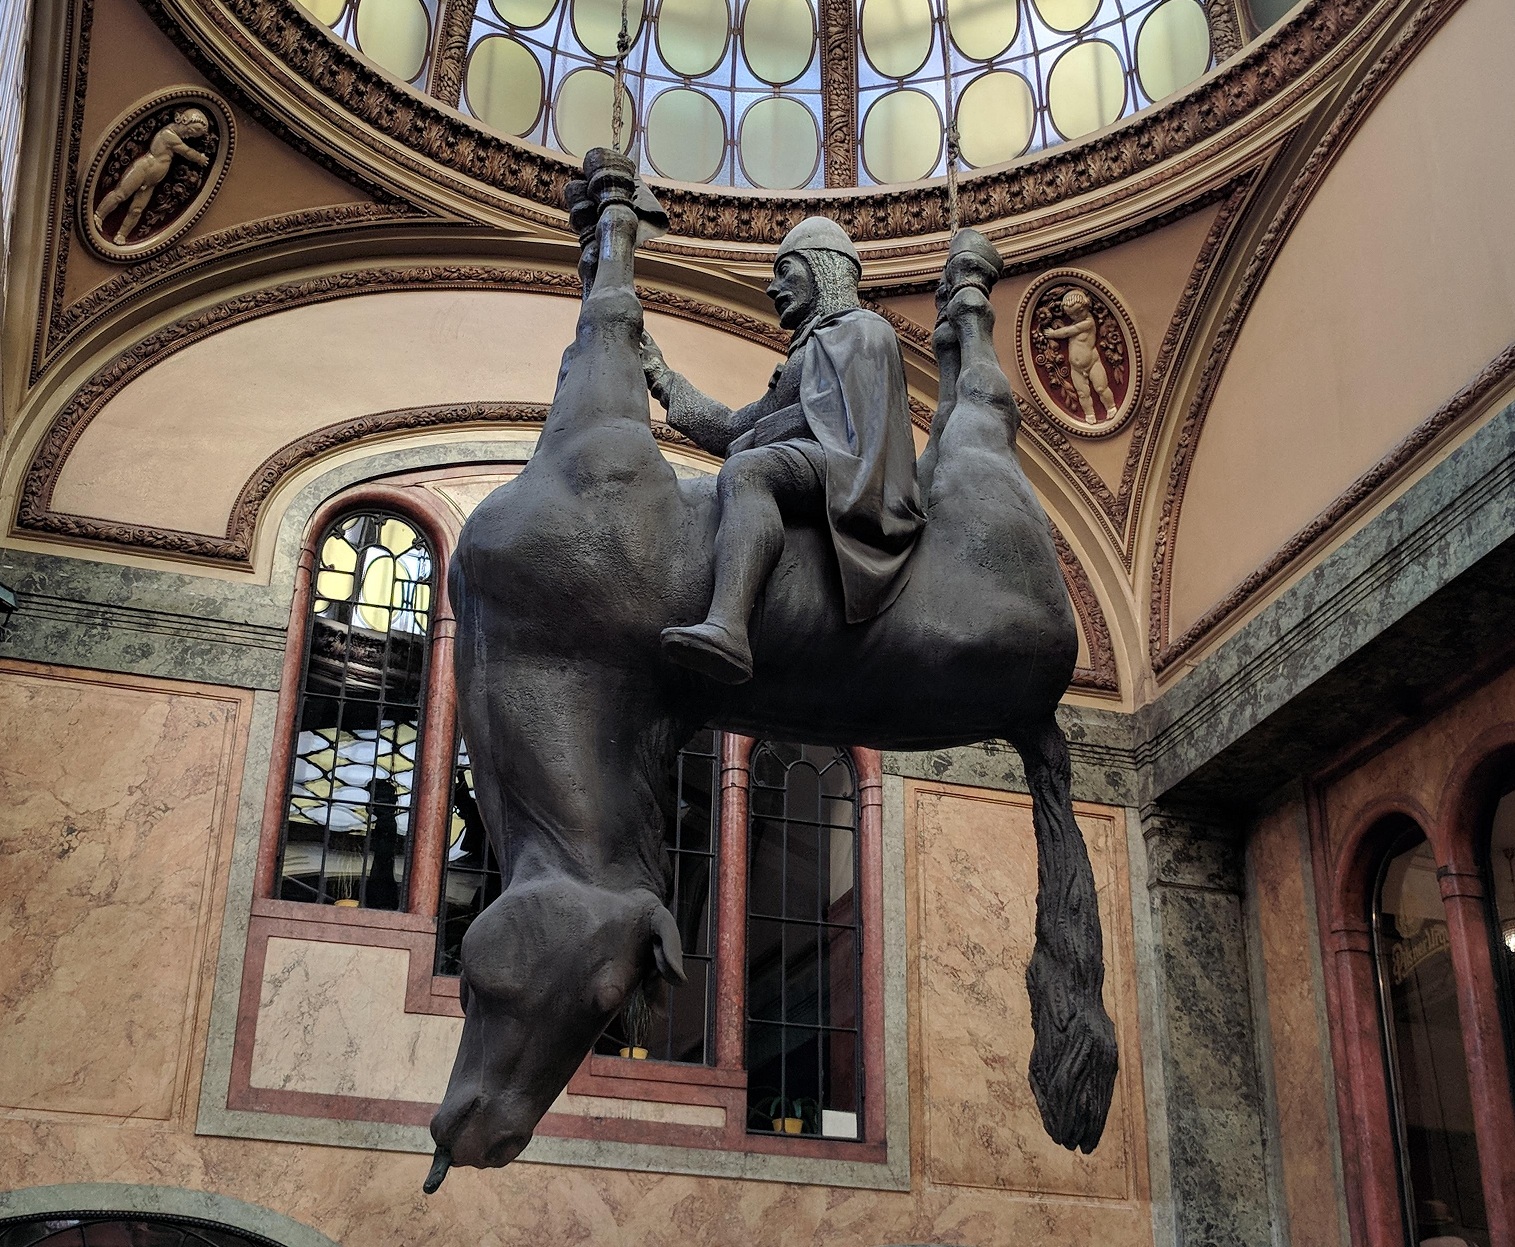 Скульптура "Конь" в пассаже Луцерна на Водичковой улице, Прага, Чехия. Сатира чешского художника Давида Чёрного на знаменитый памятник святому Вацлаву.